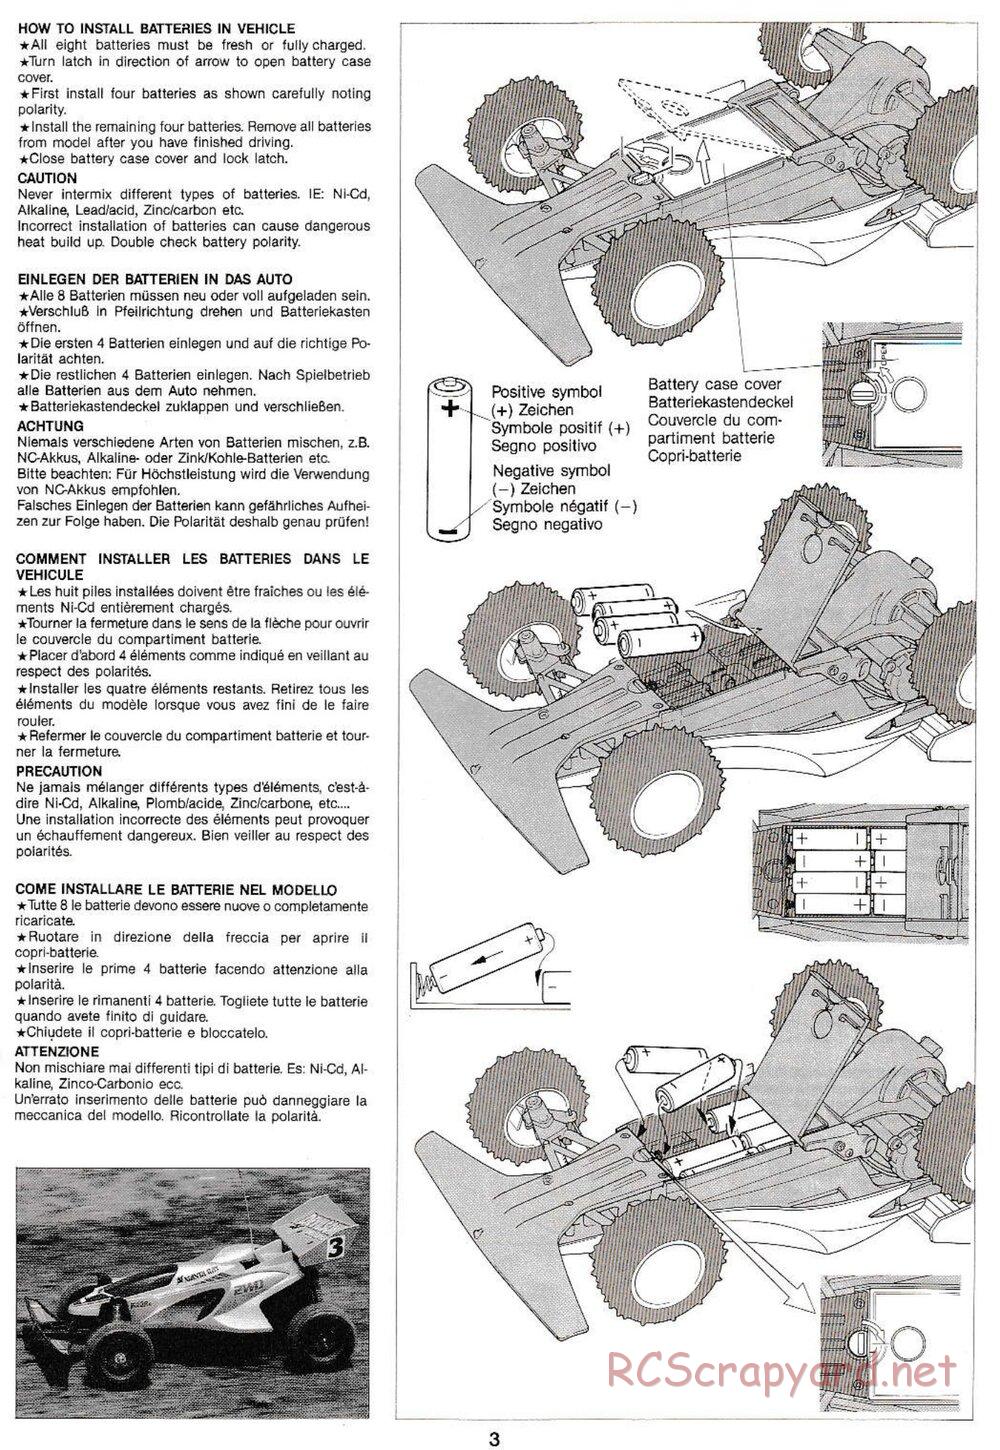 Tamiya - Manta Ray QD Chassis - Manual - Page 3